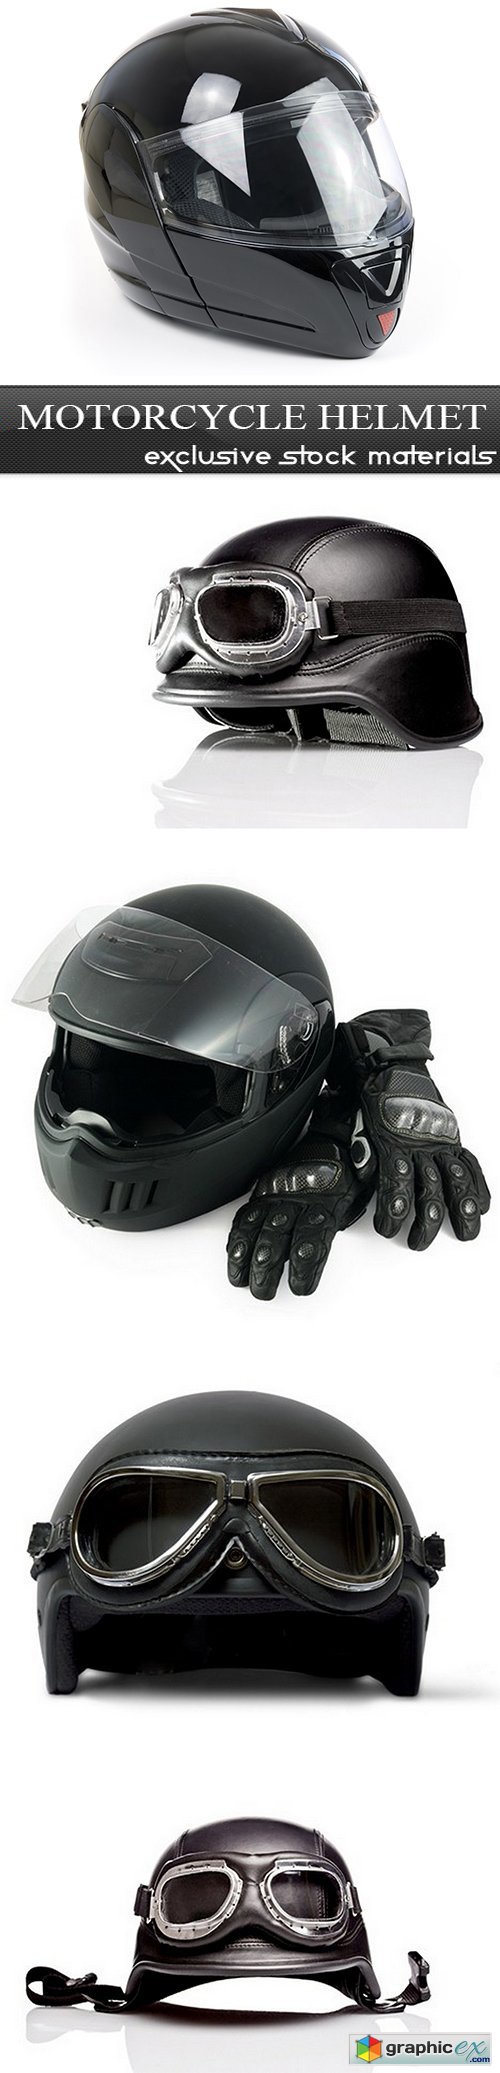 Motorcycle Helmet - 5 UHQ JPEG